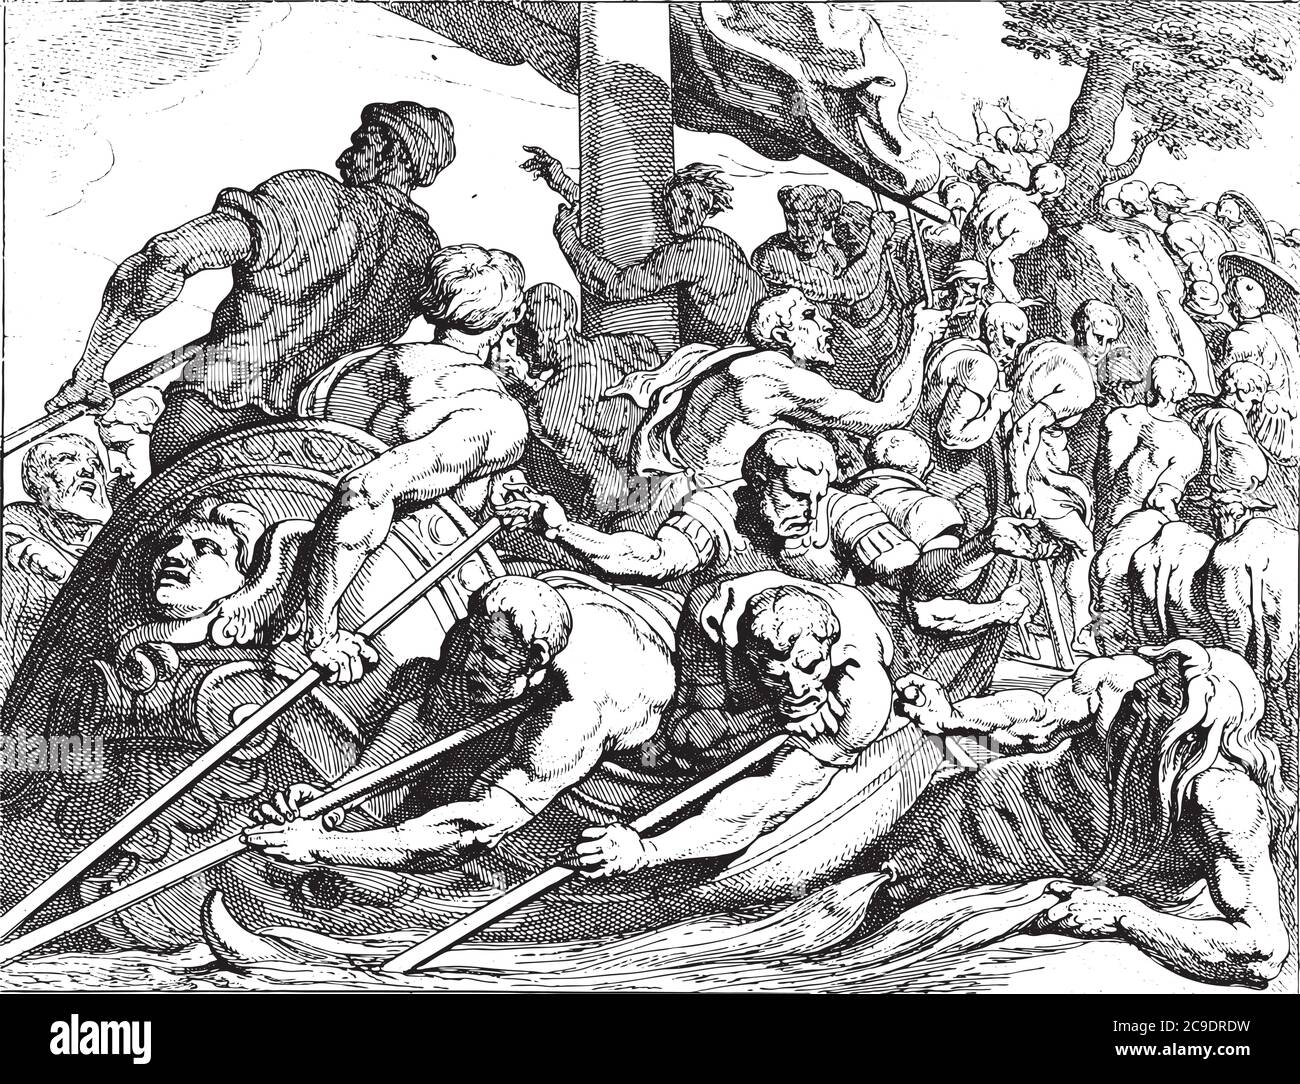 Odysseo arriva al mondo sotterraneo, le navi di Odysseo e i suoi uomini gemono prima di Odysseo scenderanno nel mondo sotterraneo, incisione vintage. Illustrazione Vettoriale